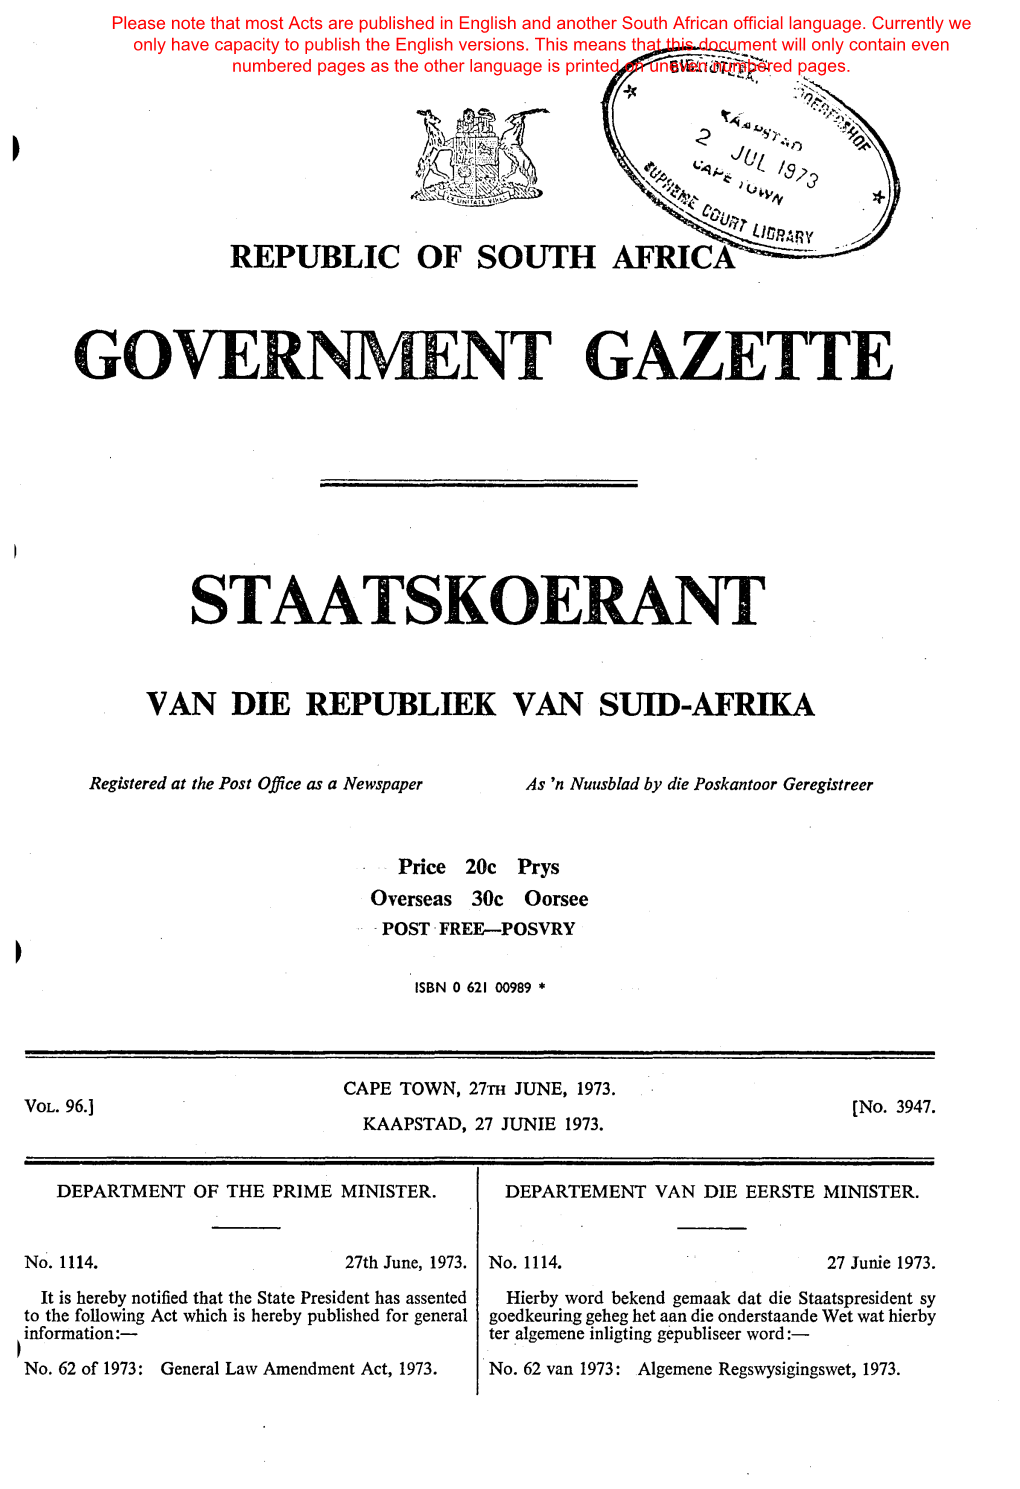 General Law Amendment Act, 1973